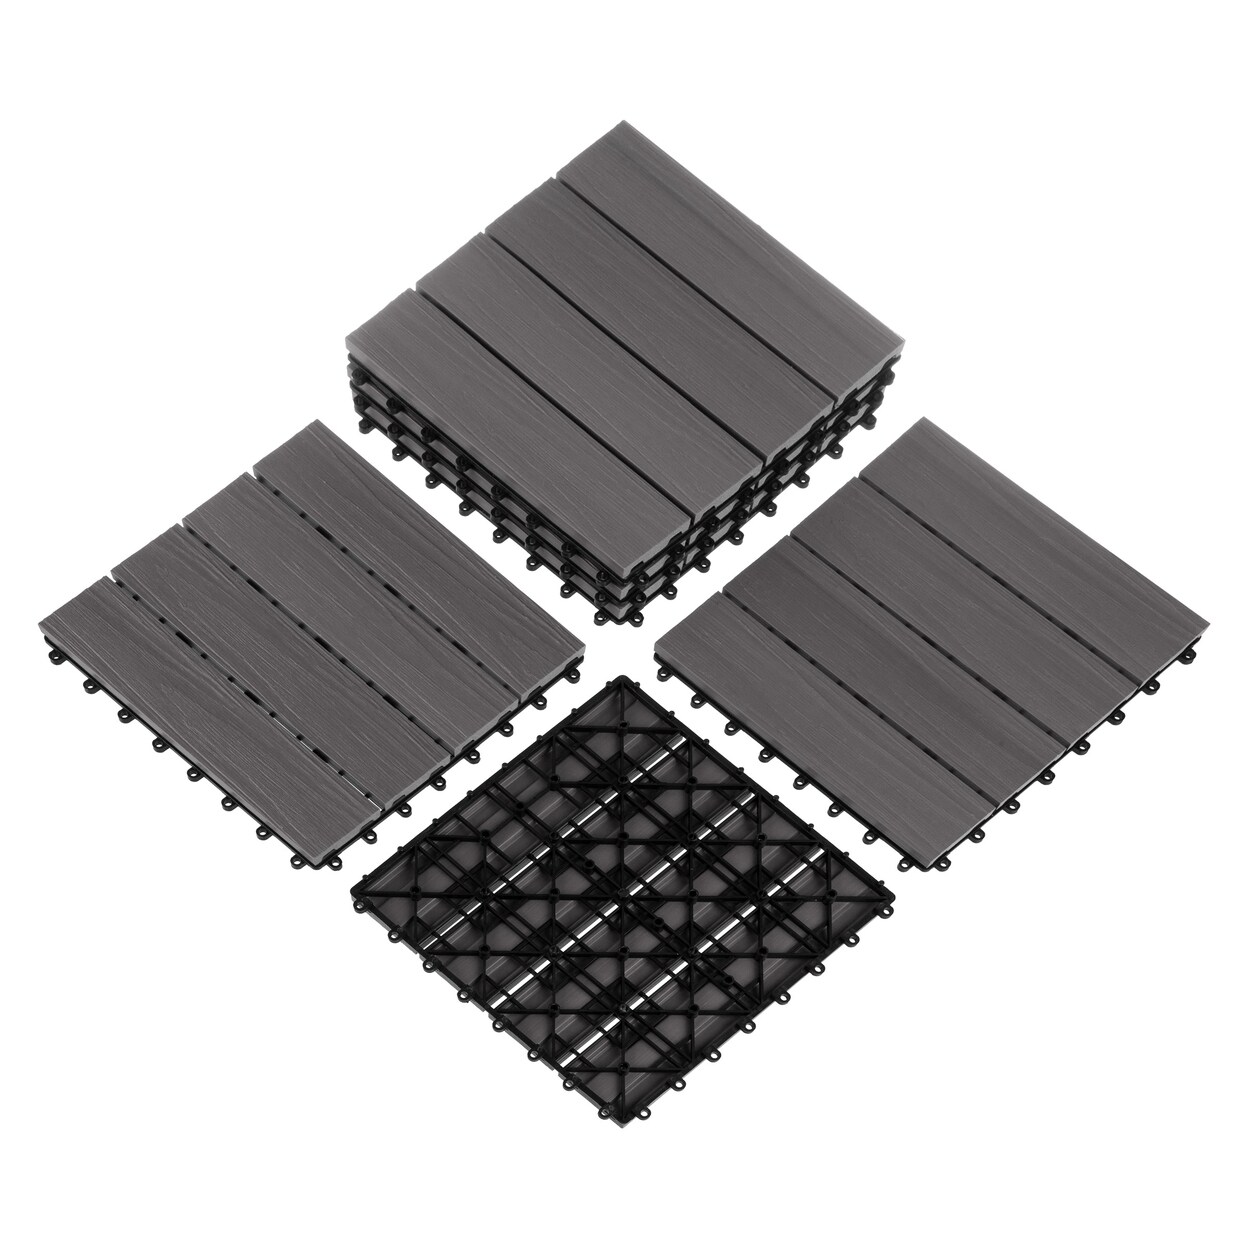 Pure Garden 6 Sets Patio Floor Tiles Wood/Plastic Interlocking Deck Tiles Gray Woodgrain